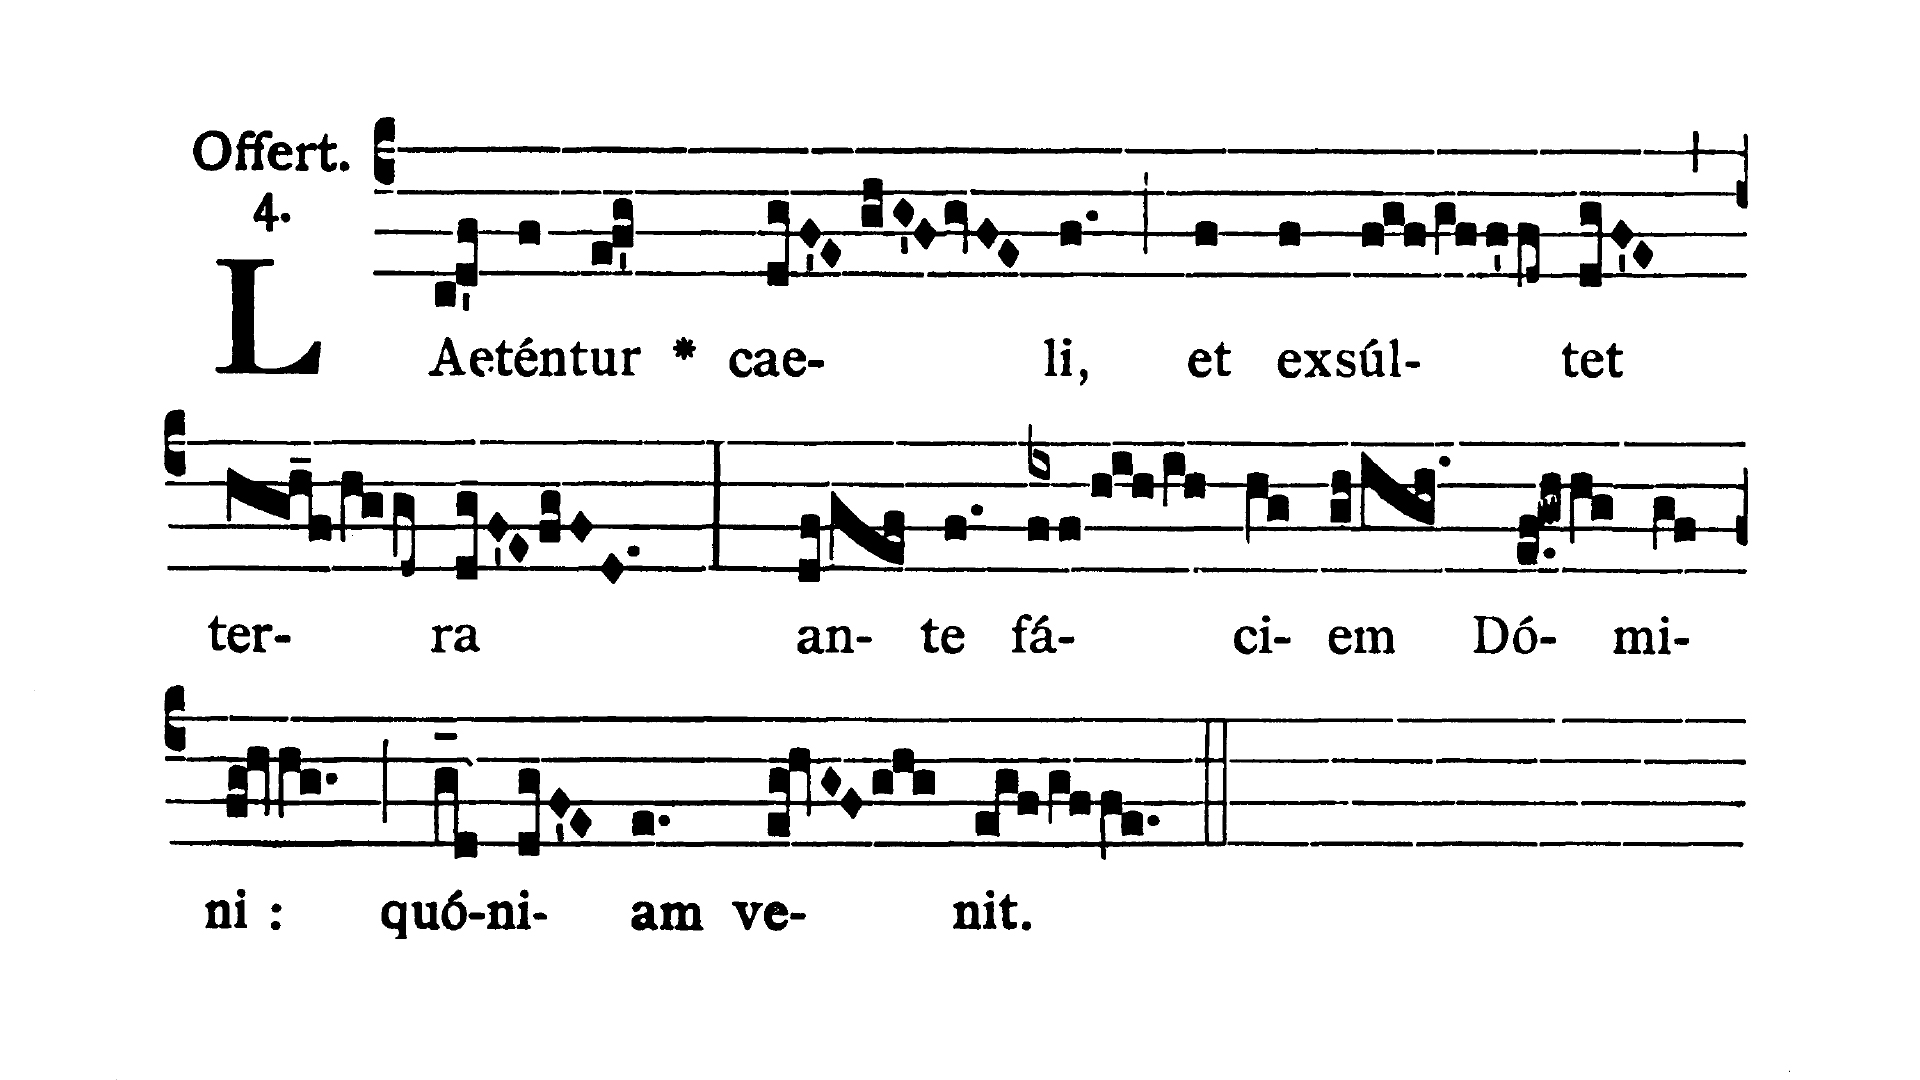 In Nativitate Domini ad primum Missam in nocte - Offertorium (Laetentur caeli)